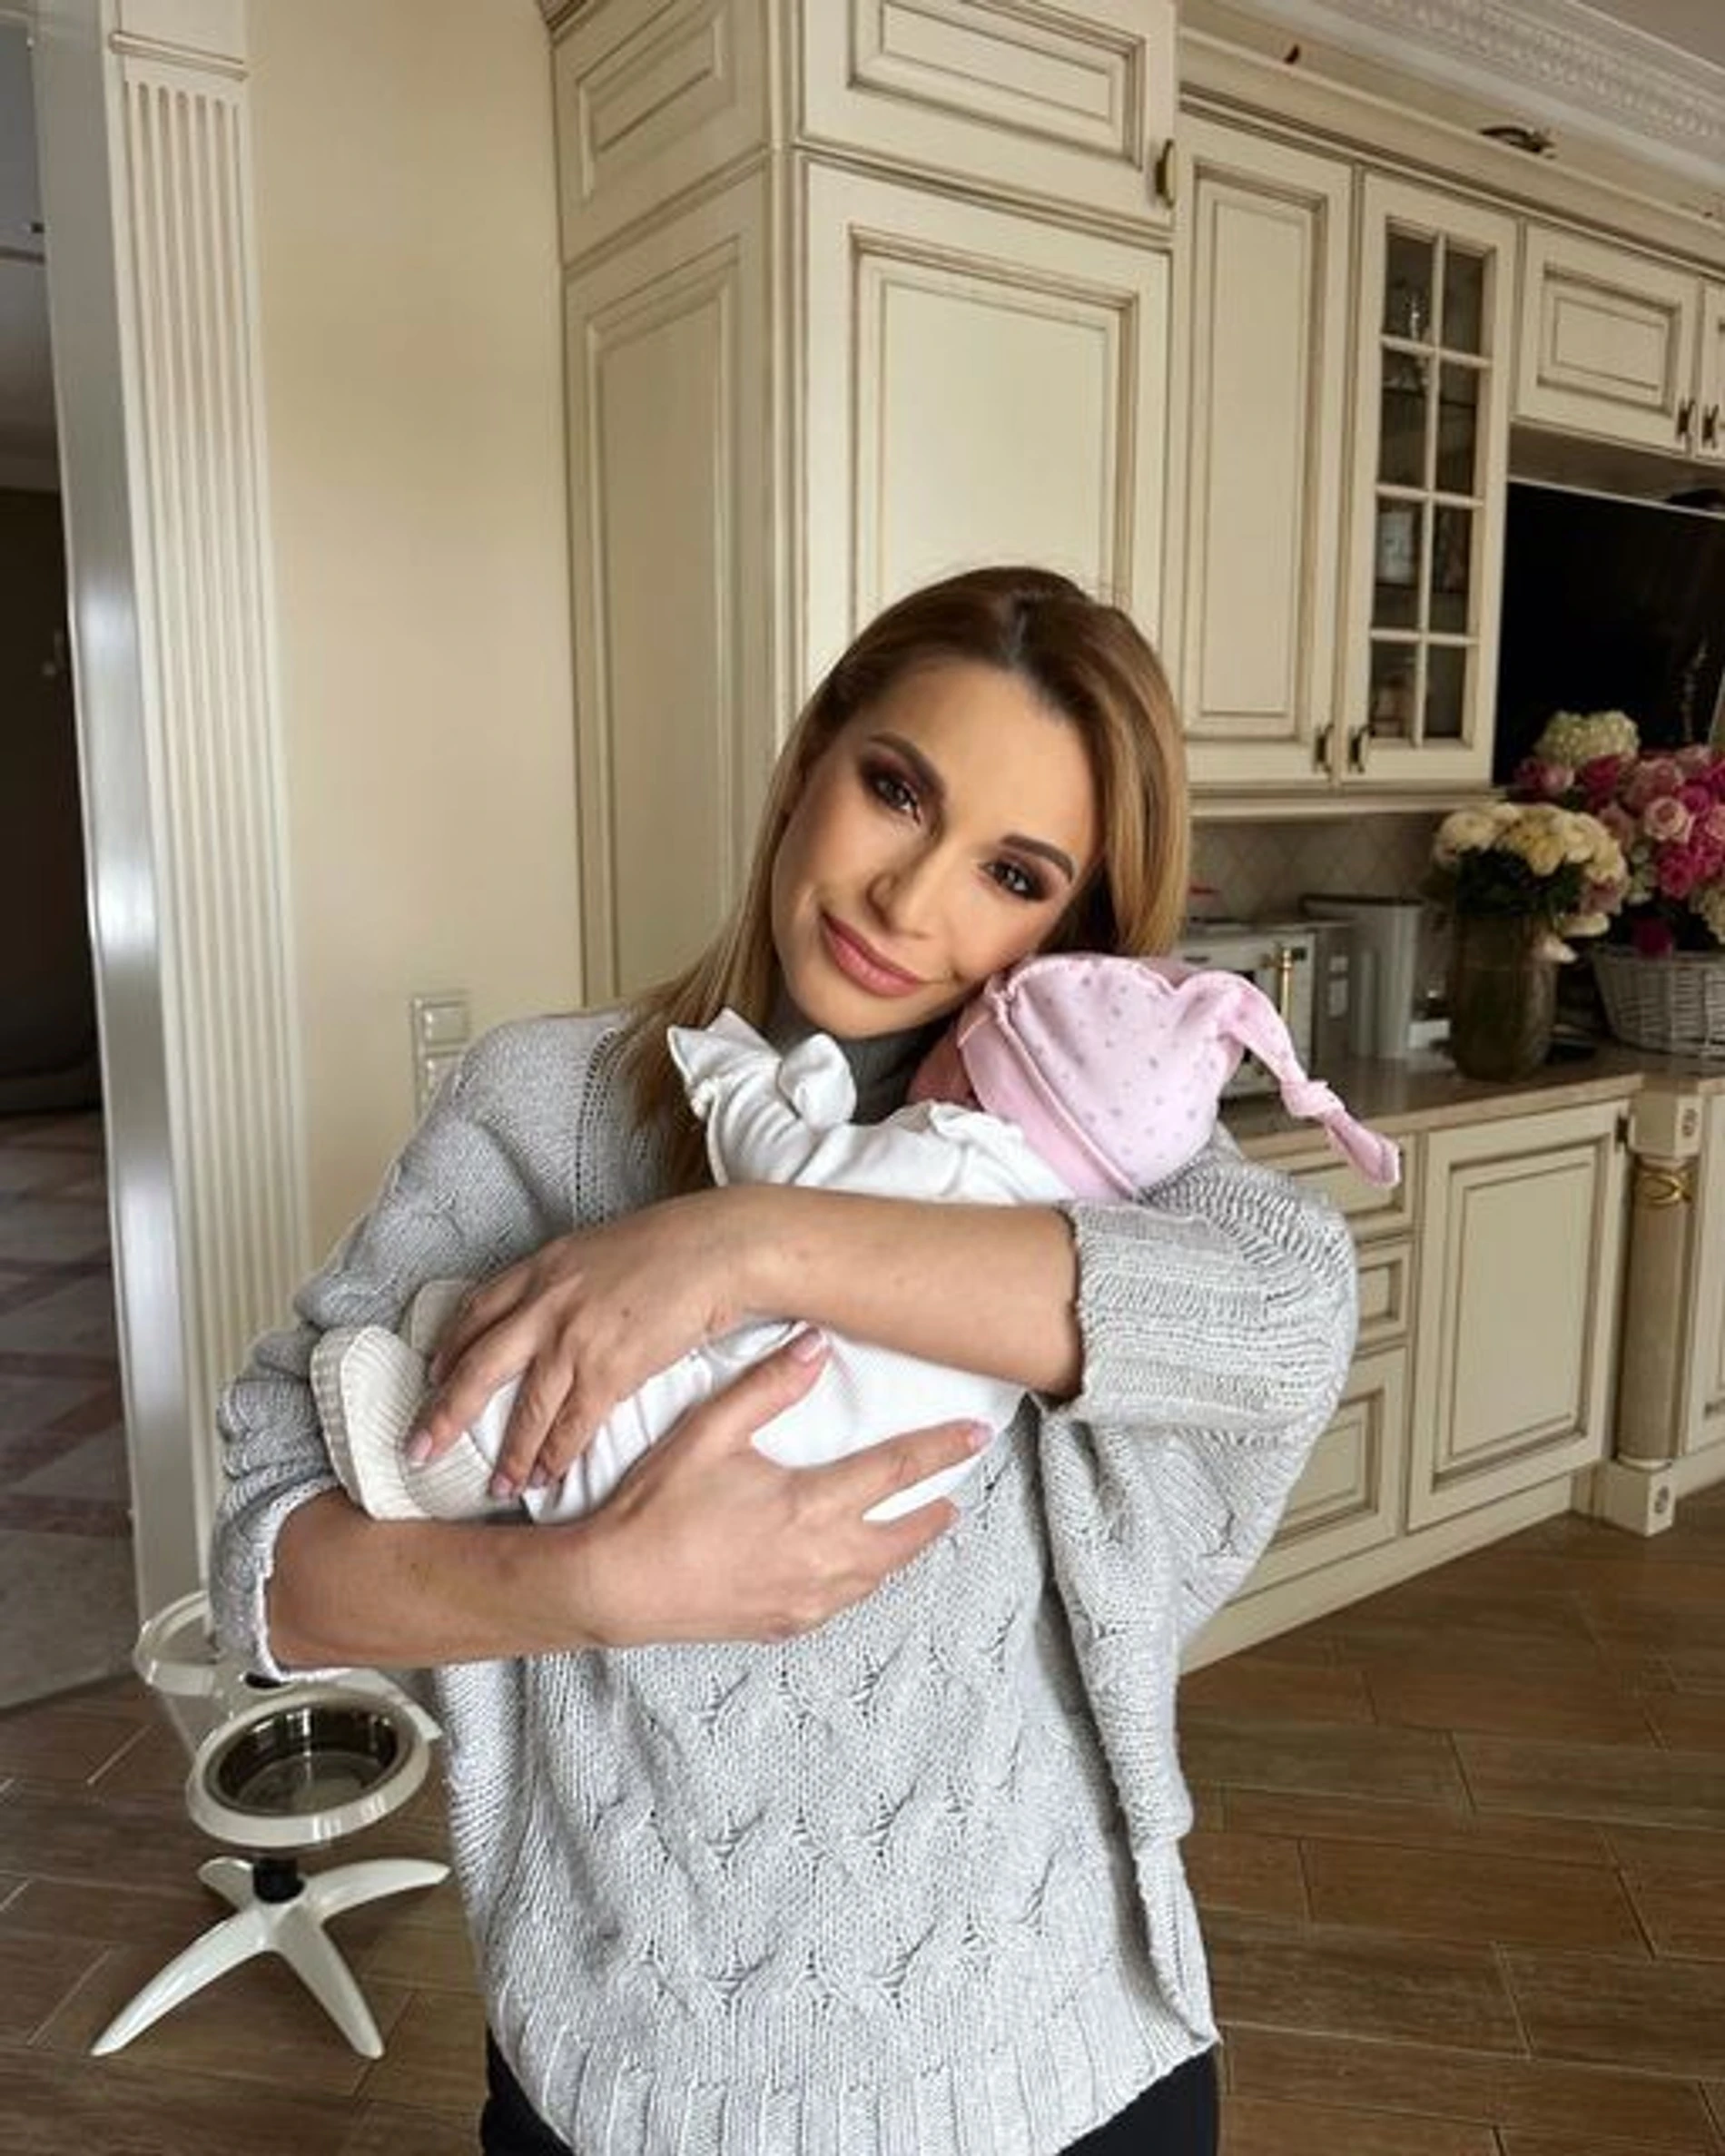 Ольга Орлова с новорожденной дочерью Аней
Фото: Инстаграм (запрещен в РФ) / @olgaorlova1311